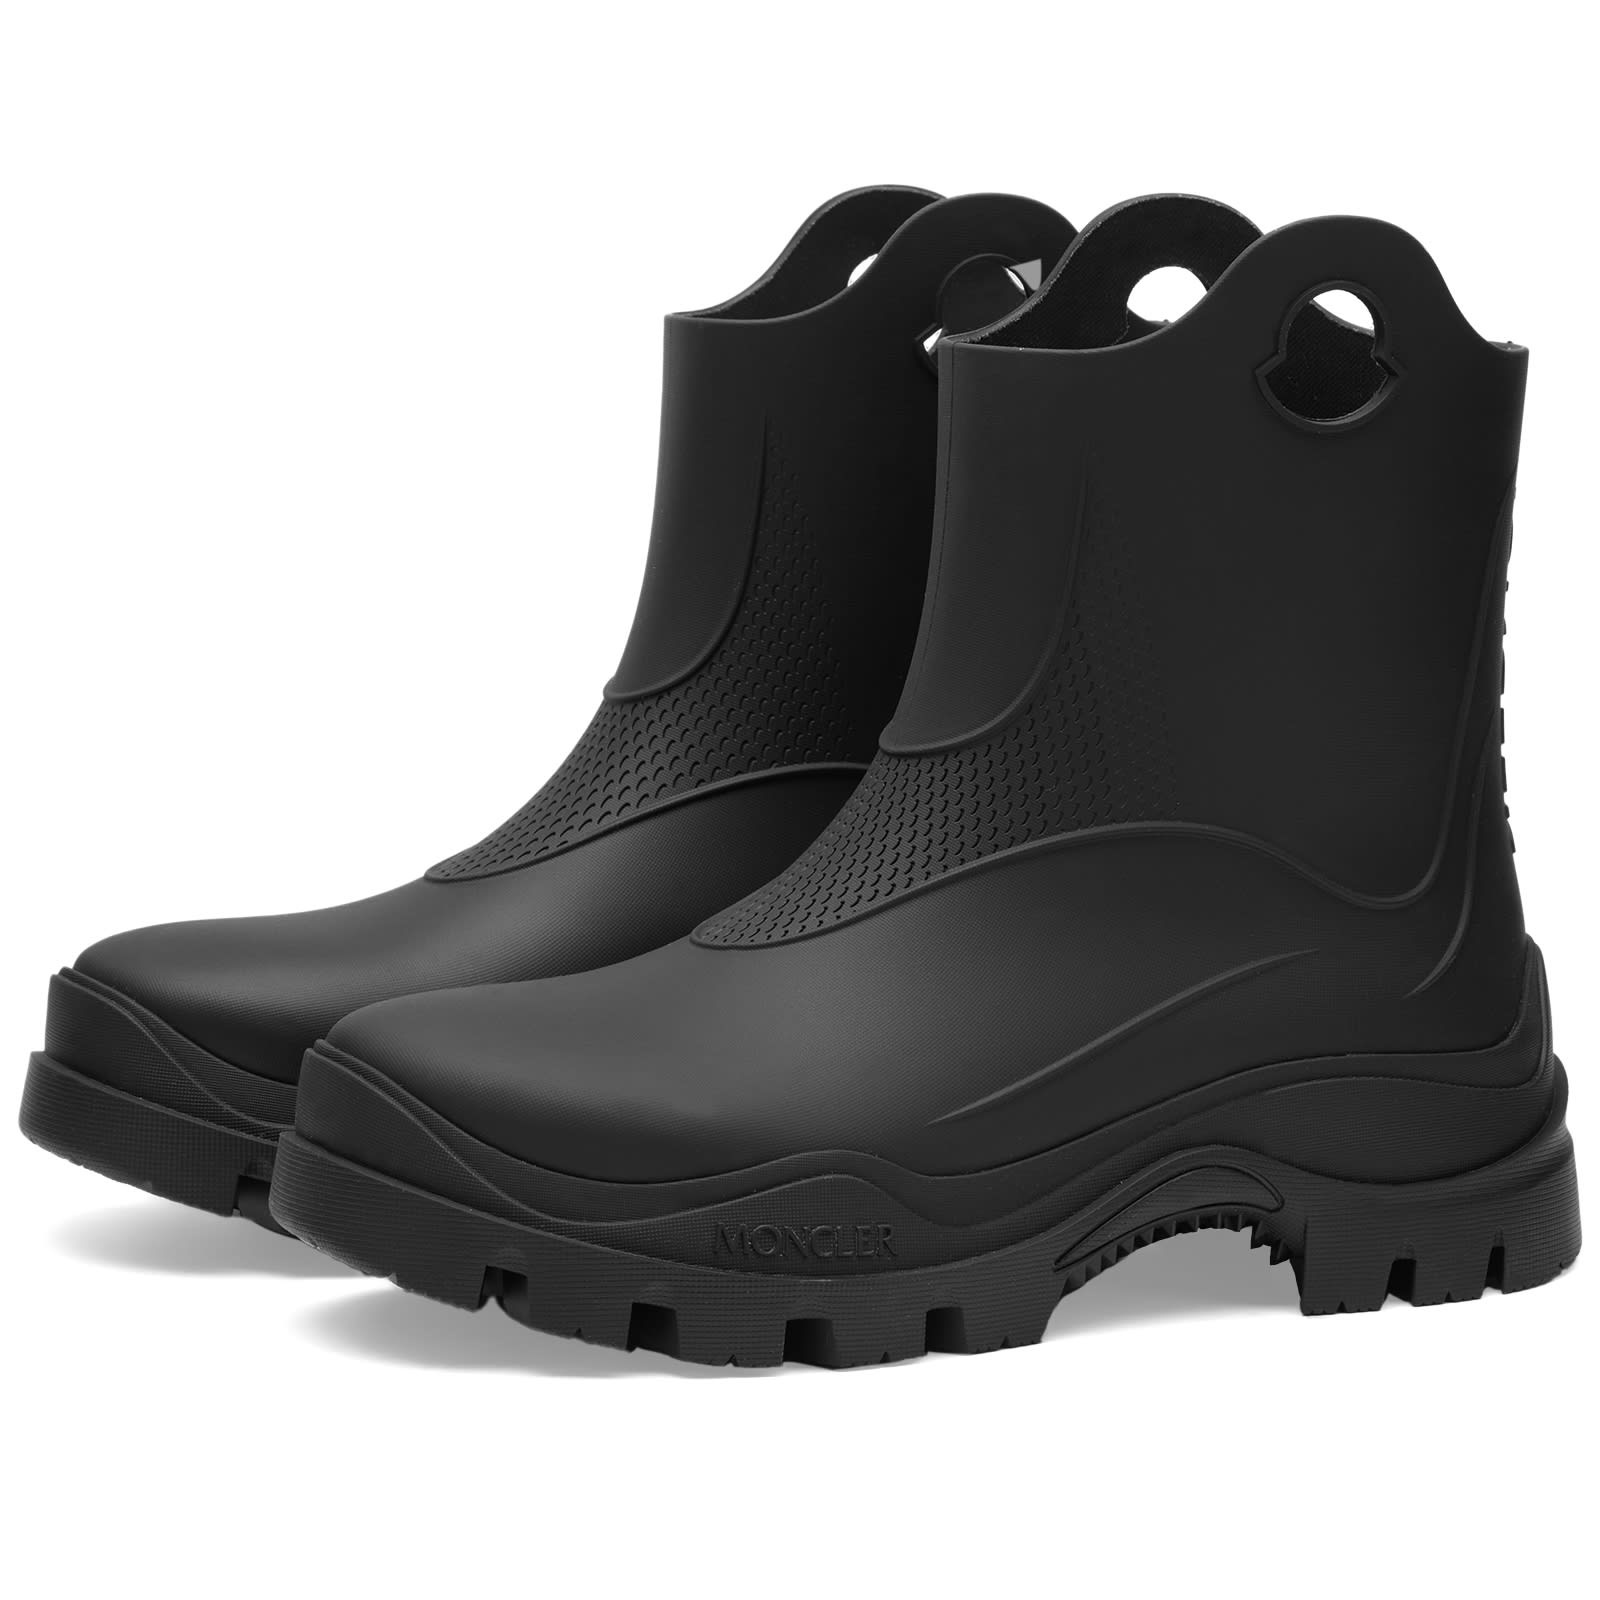 Moncler Misty Rain Boots - 1